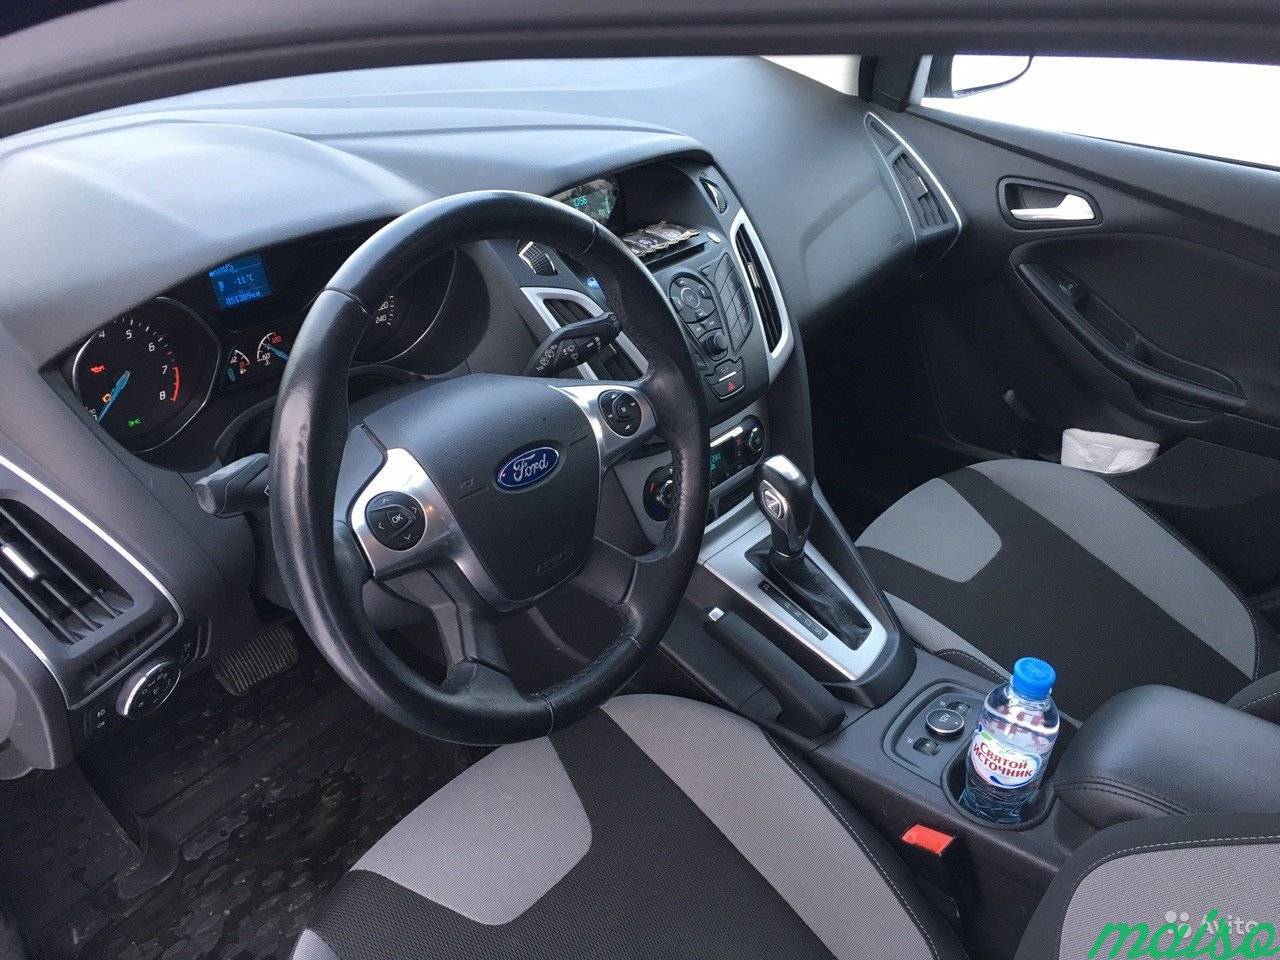 Ford Focus 1.6 AT, 2014, хетчбэк в Санкт-Петербурге. Фото 5